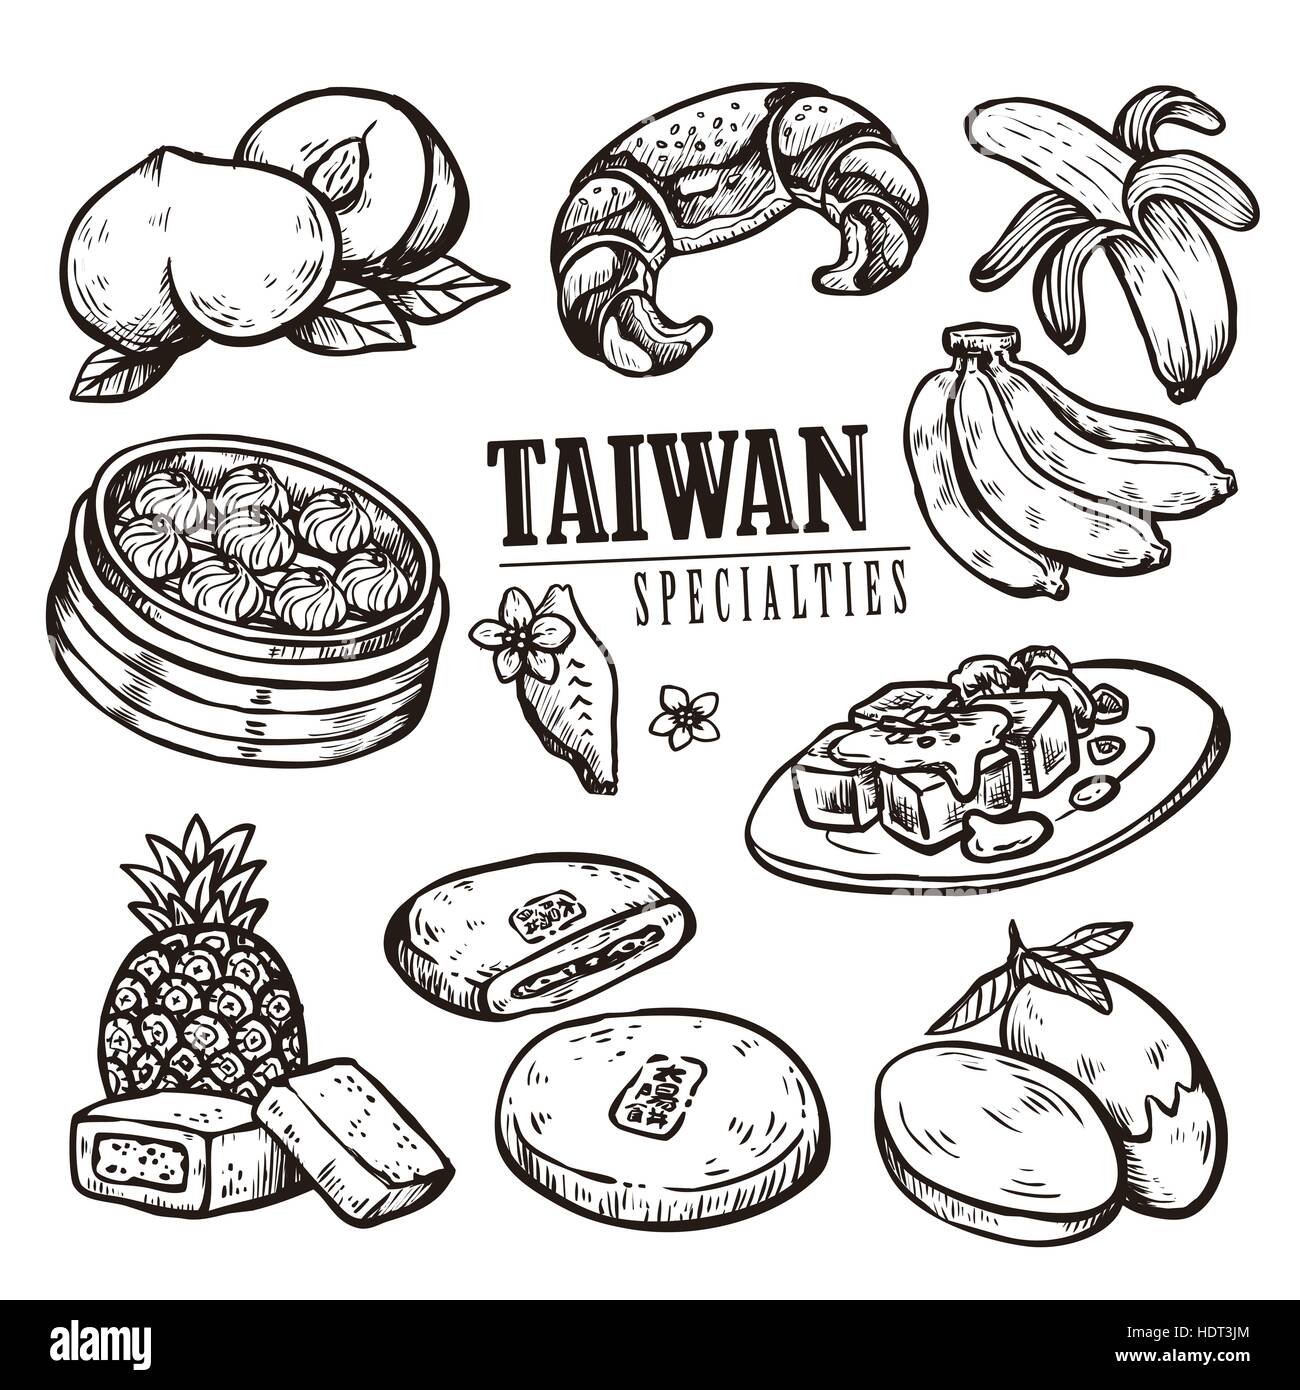 exquisite Taiwan Spezialitäten-Auflistung in der hand gezeichnet Stil Stock Vektor